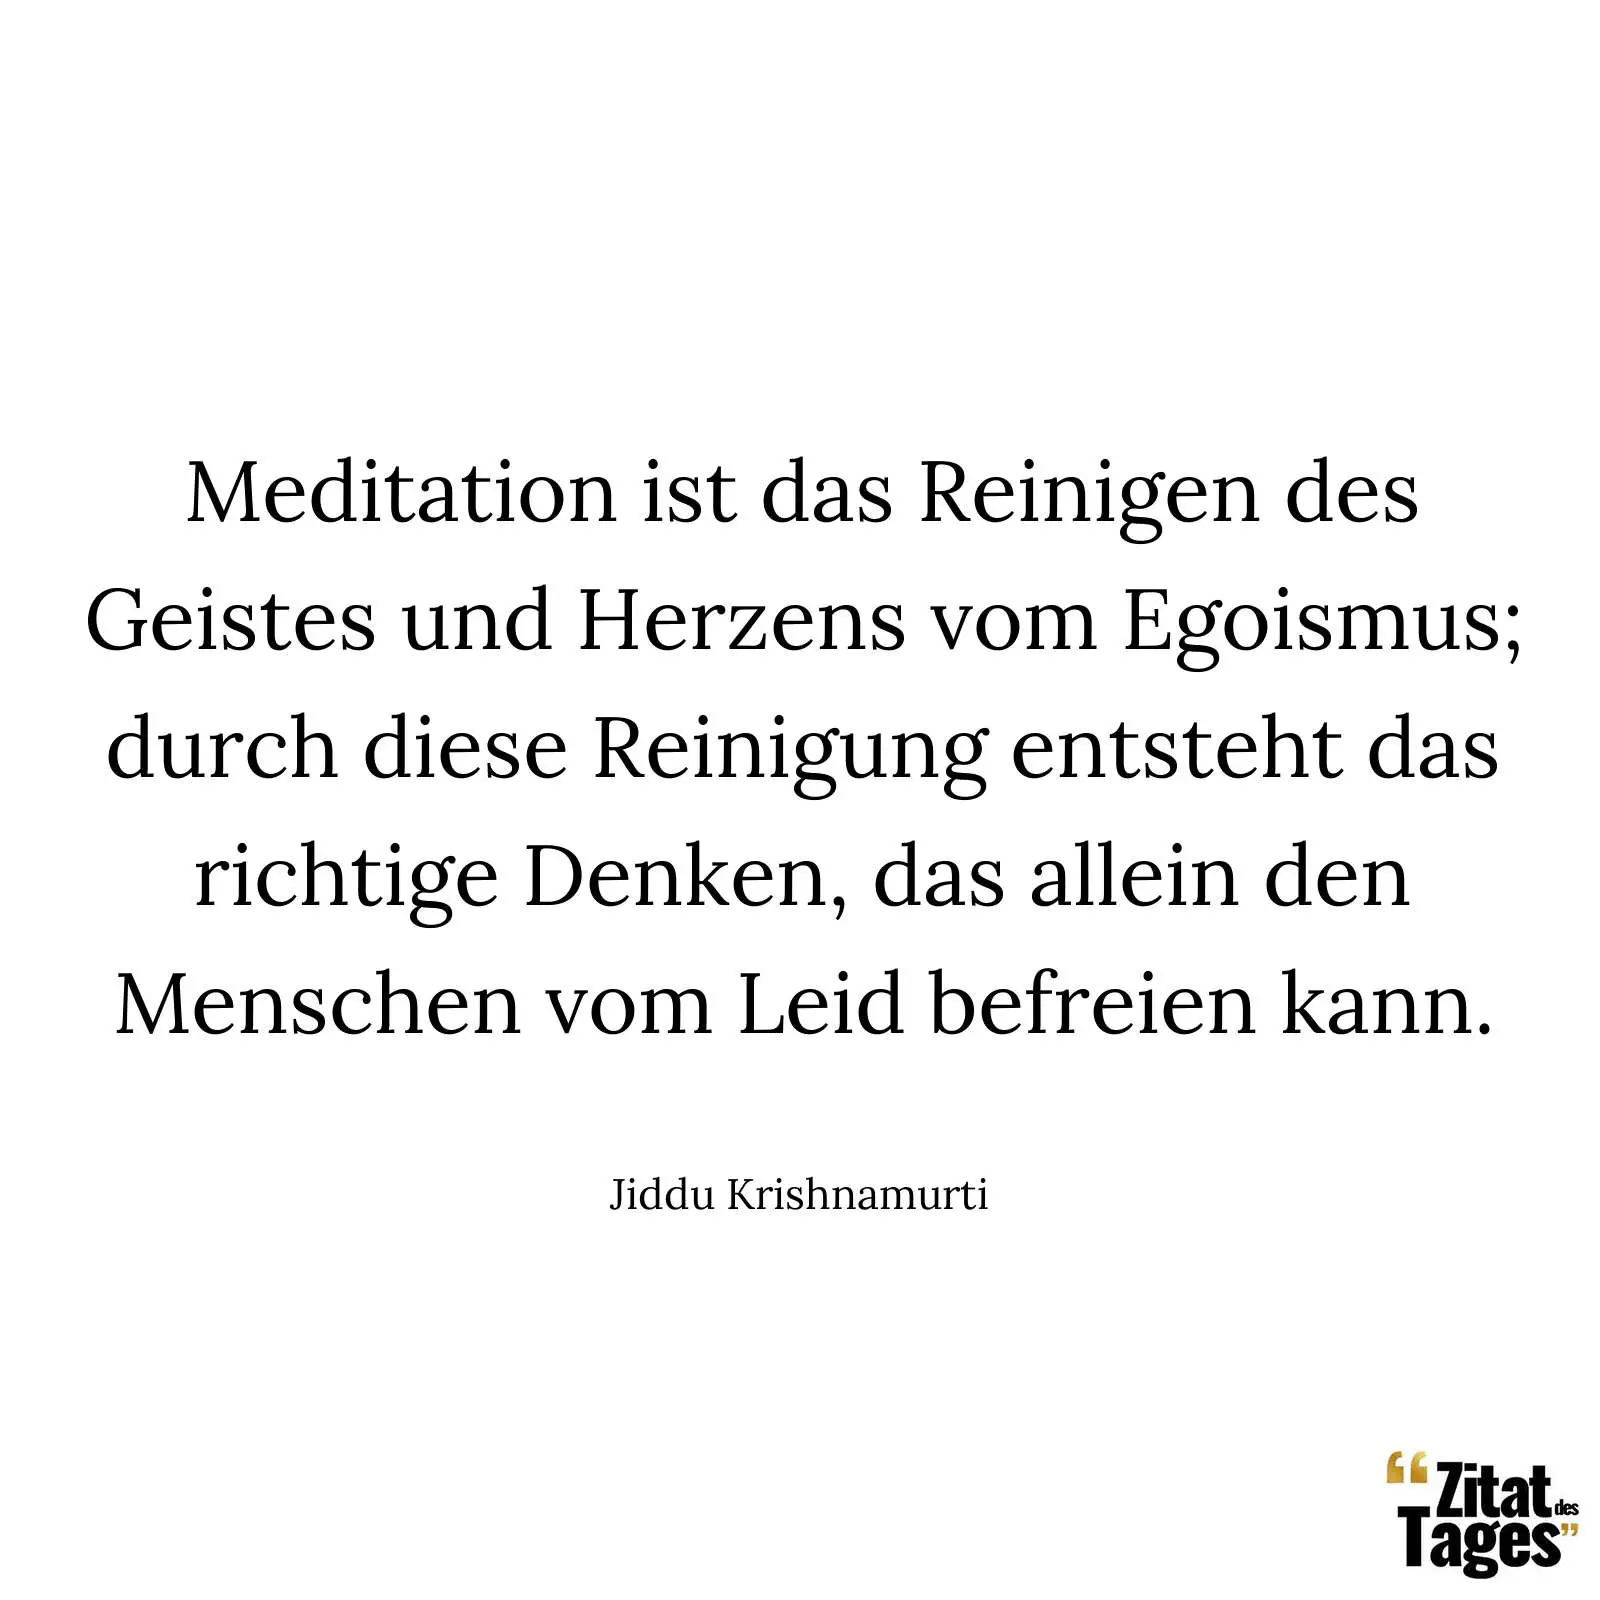 Meditation ist das Reinigen des Geistes und Herzens vom Egoismus; durch diese Reinigung entsteht das richtige Denken, das allein den Menschen vom Leid befreien kann. - Jiddu Krishnamurti